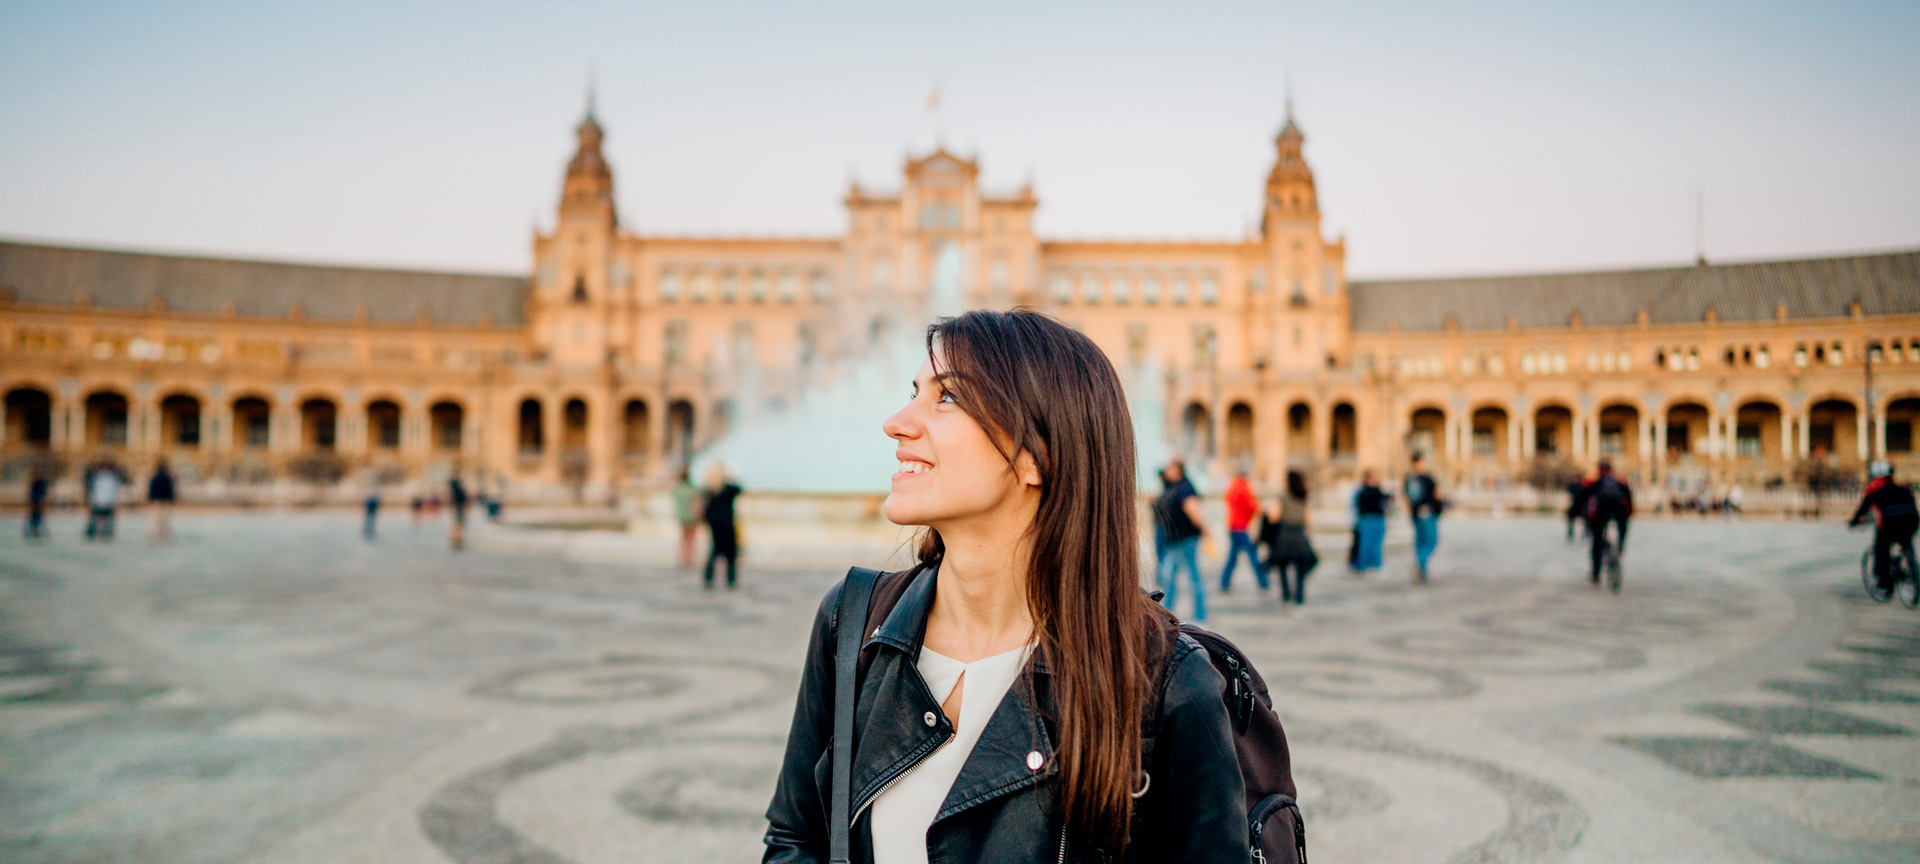 Jeune fille en train de visiter la Plaza España de Séville